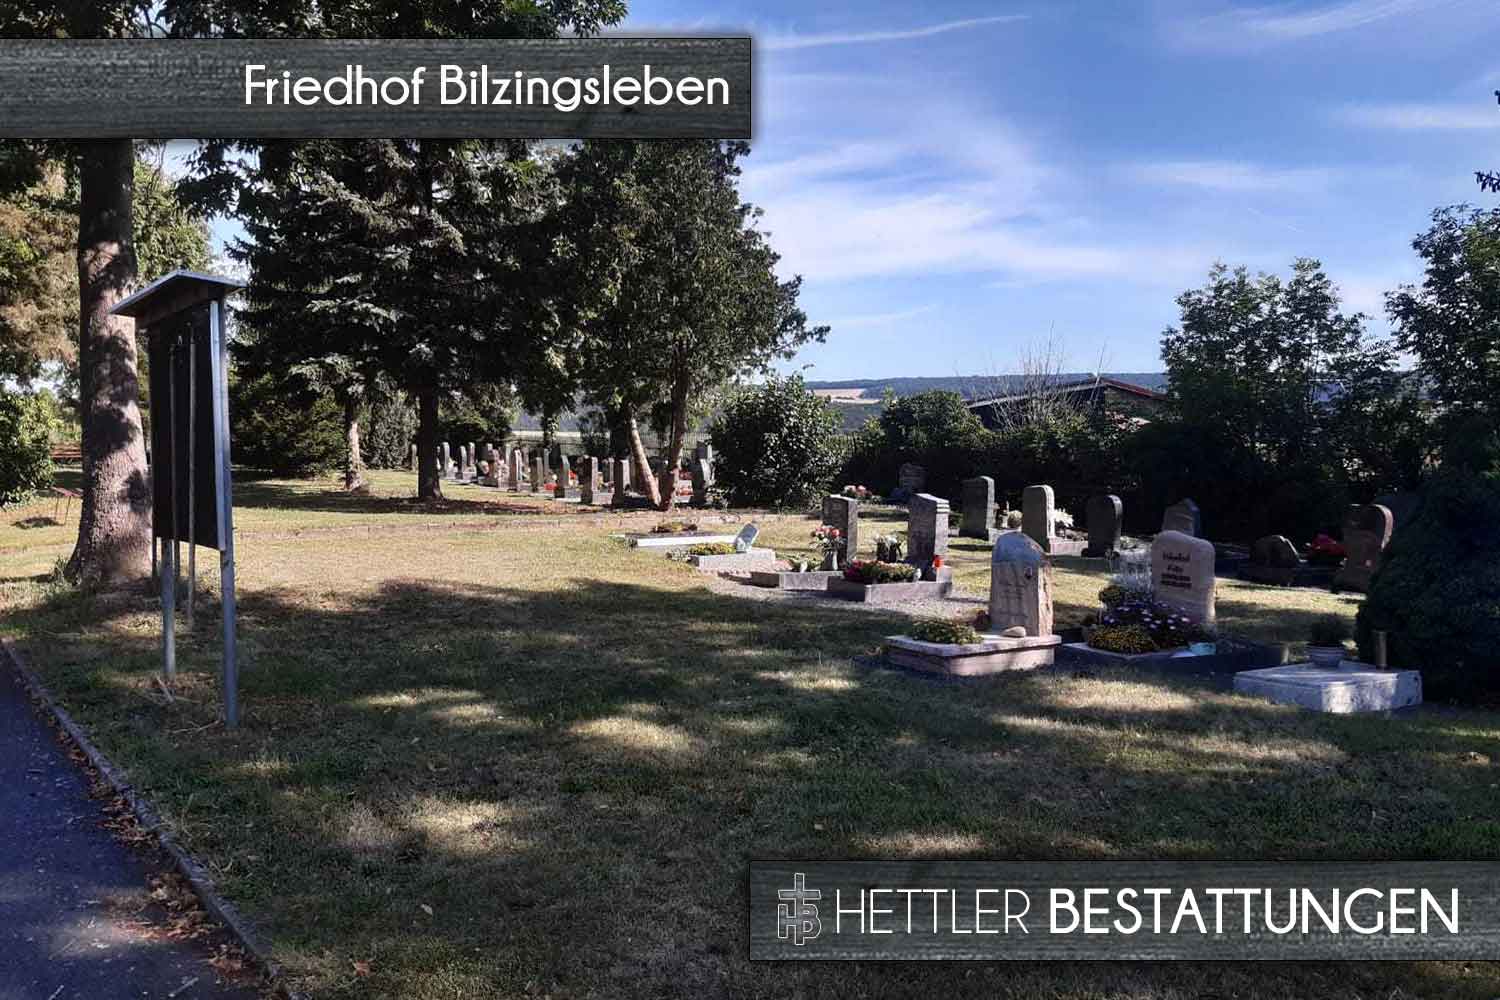 Friedhof in Bilzingsleben. Ihr Ort des Abschieds mit Hettler Bestattungen.